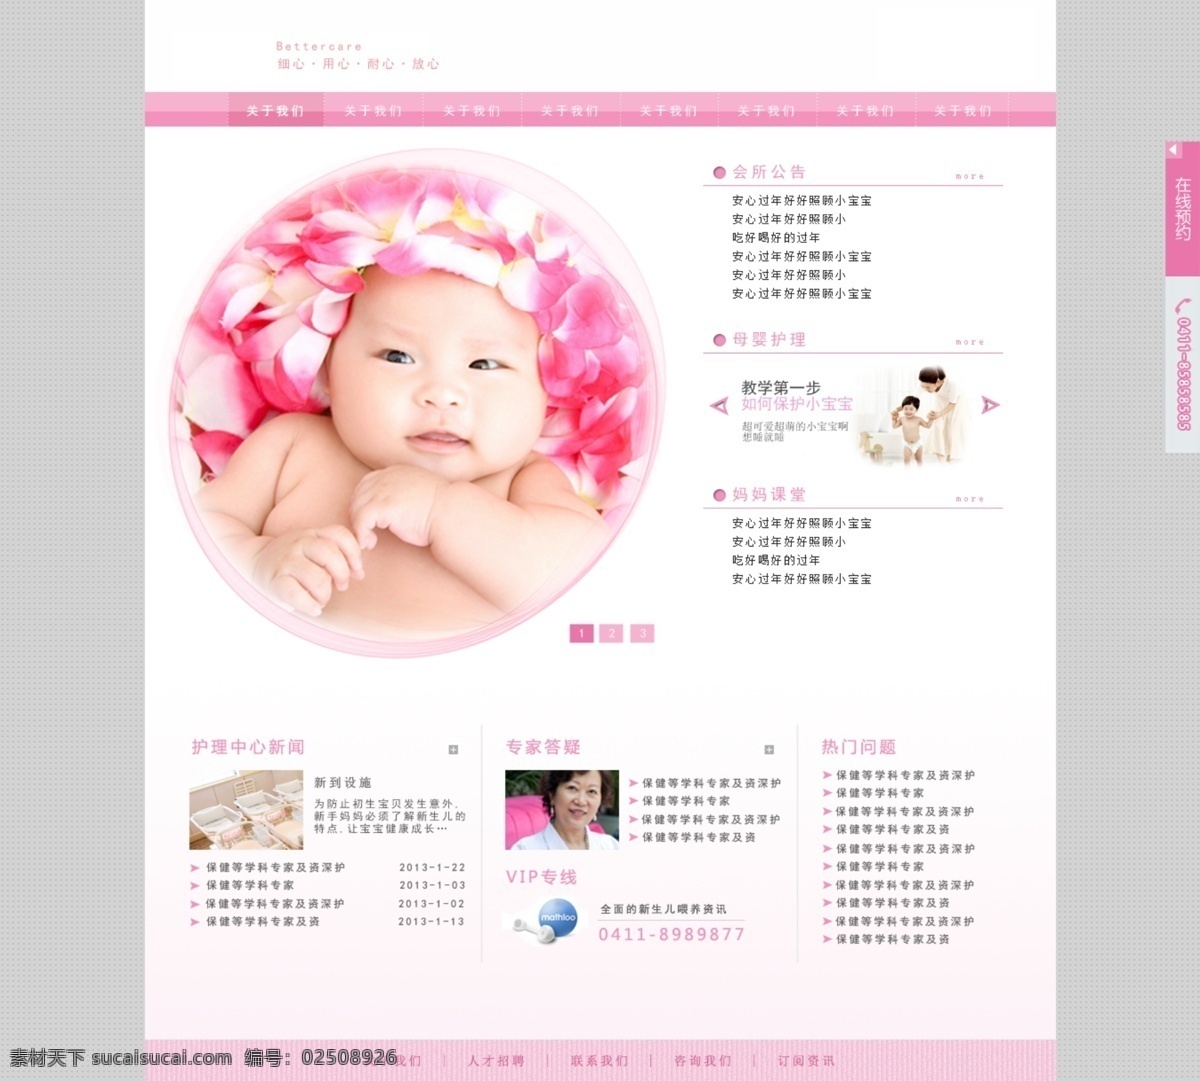 原创 月子 中心 网页设计 小孩 孕妇 月子中心网页 原创设计 原创网页设计